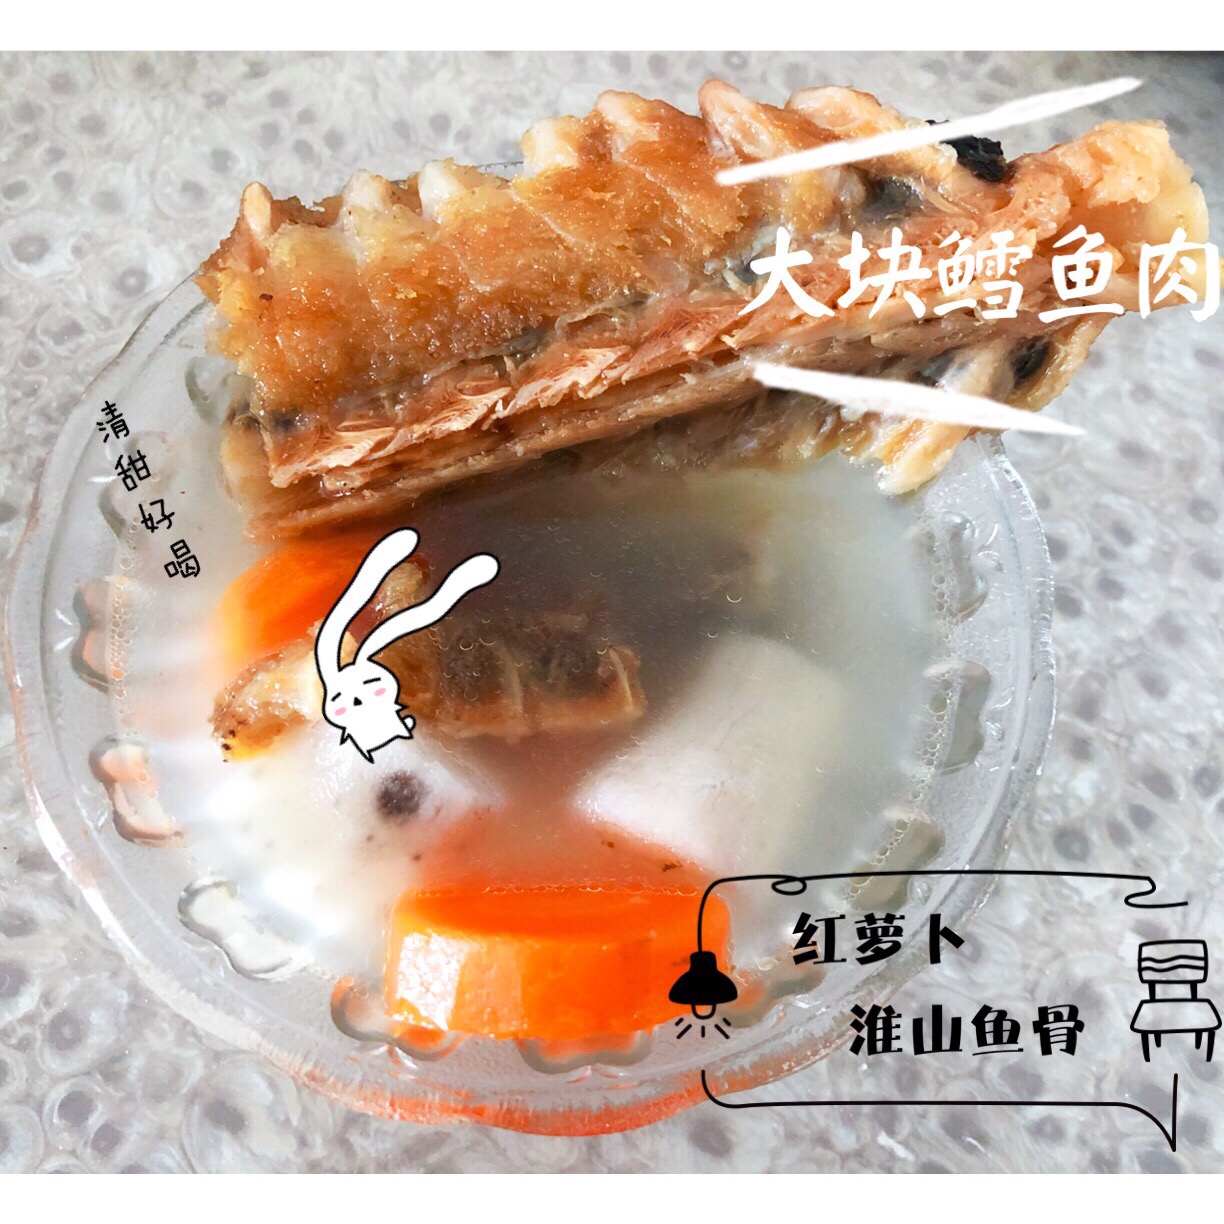 淮山红萝卜鱼骨汤的做法